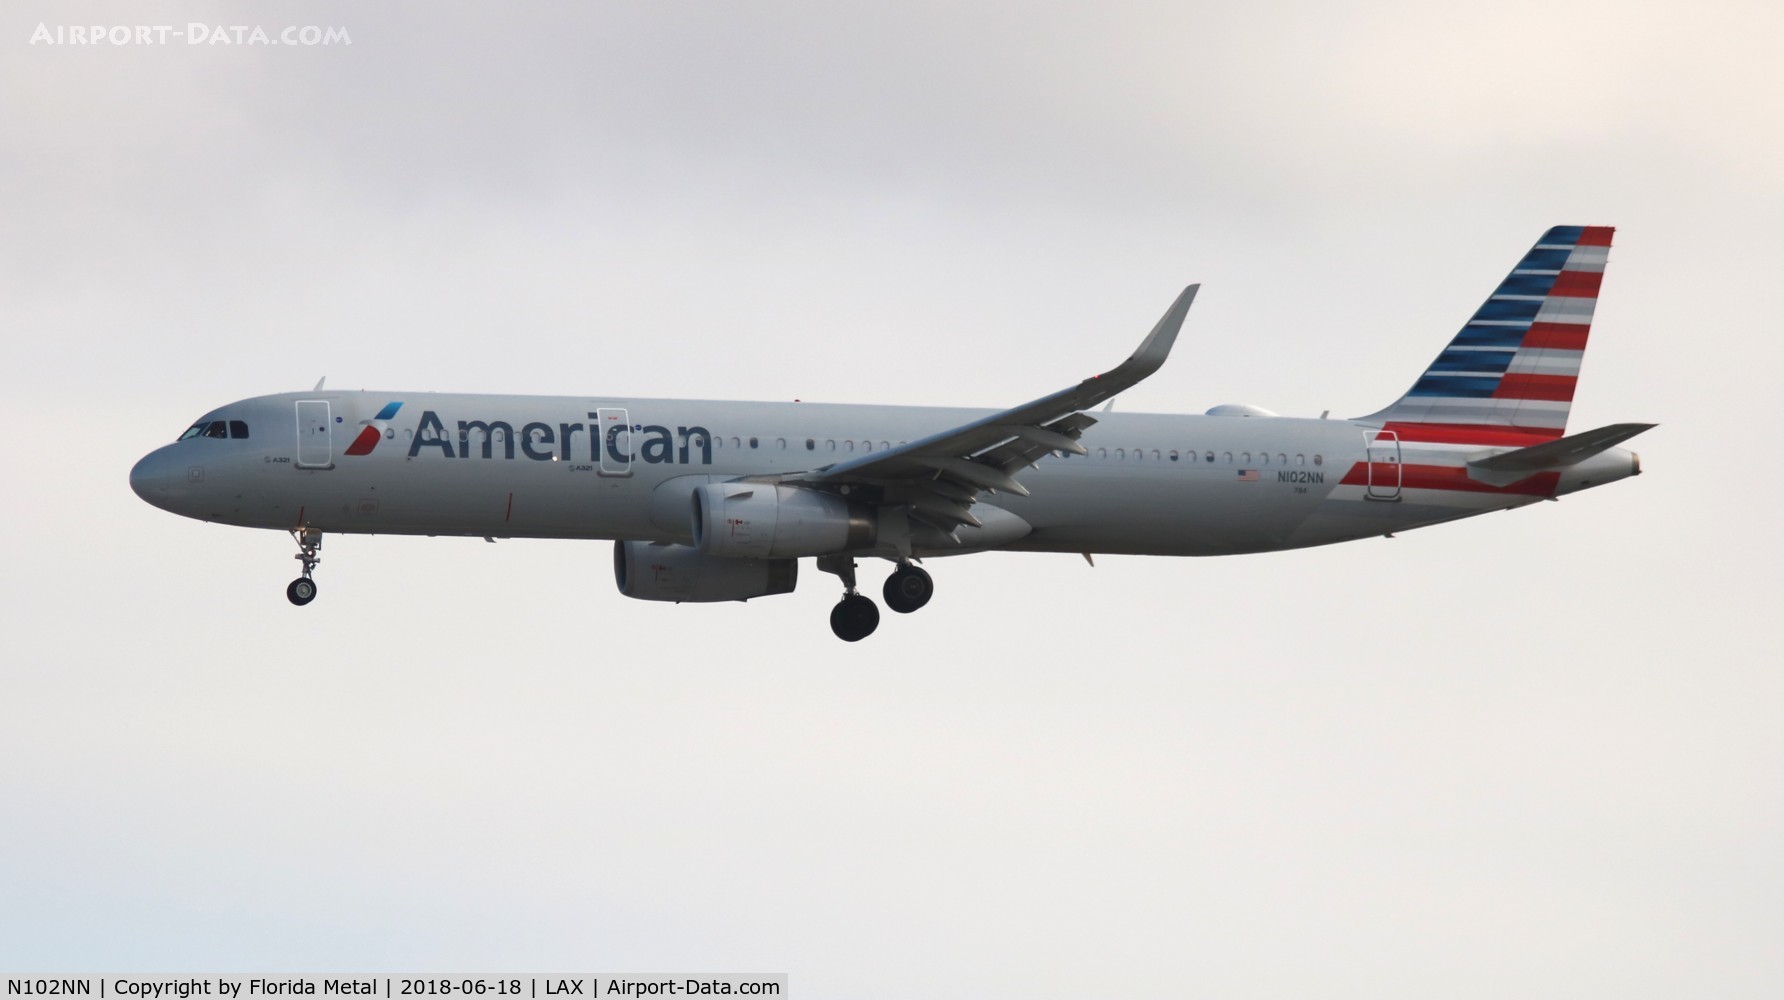 N102NN, 2013 Airbus A321-231 C/N 5860, American